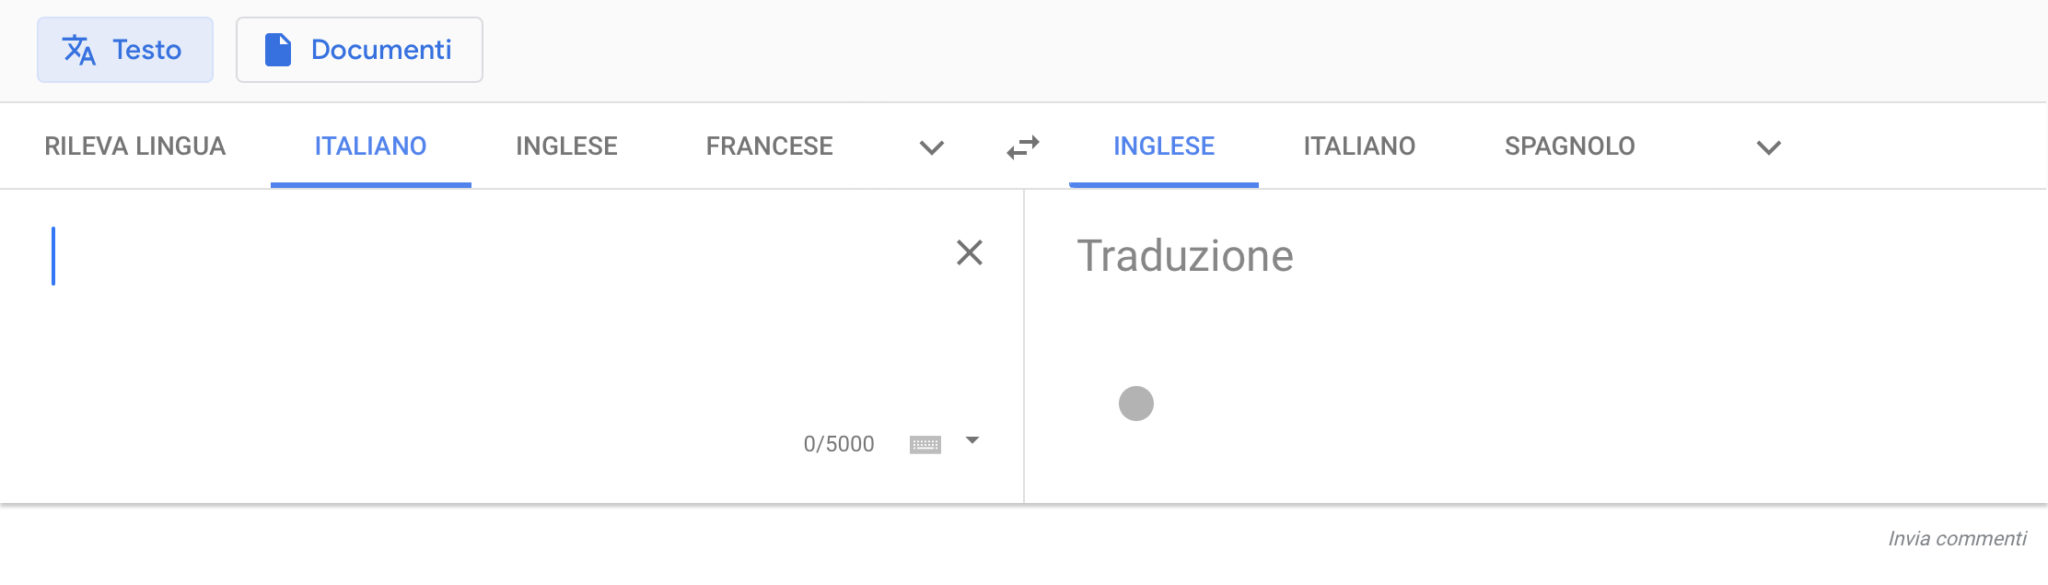 Migliori Traduttori Italiano Inglese Chimerarevo 5157